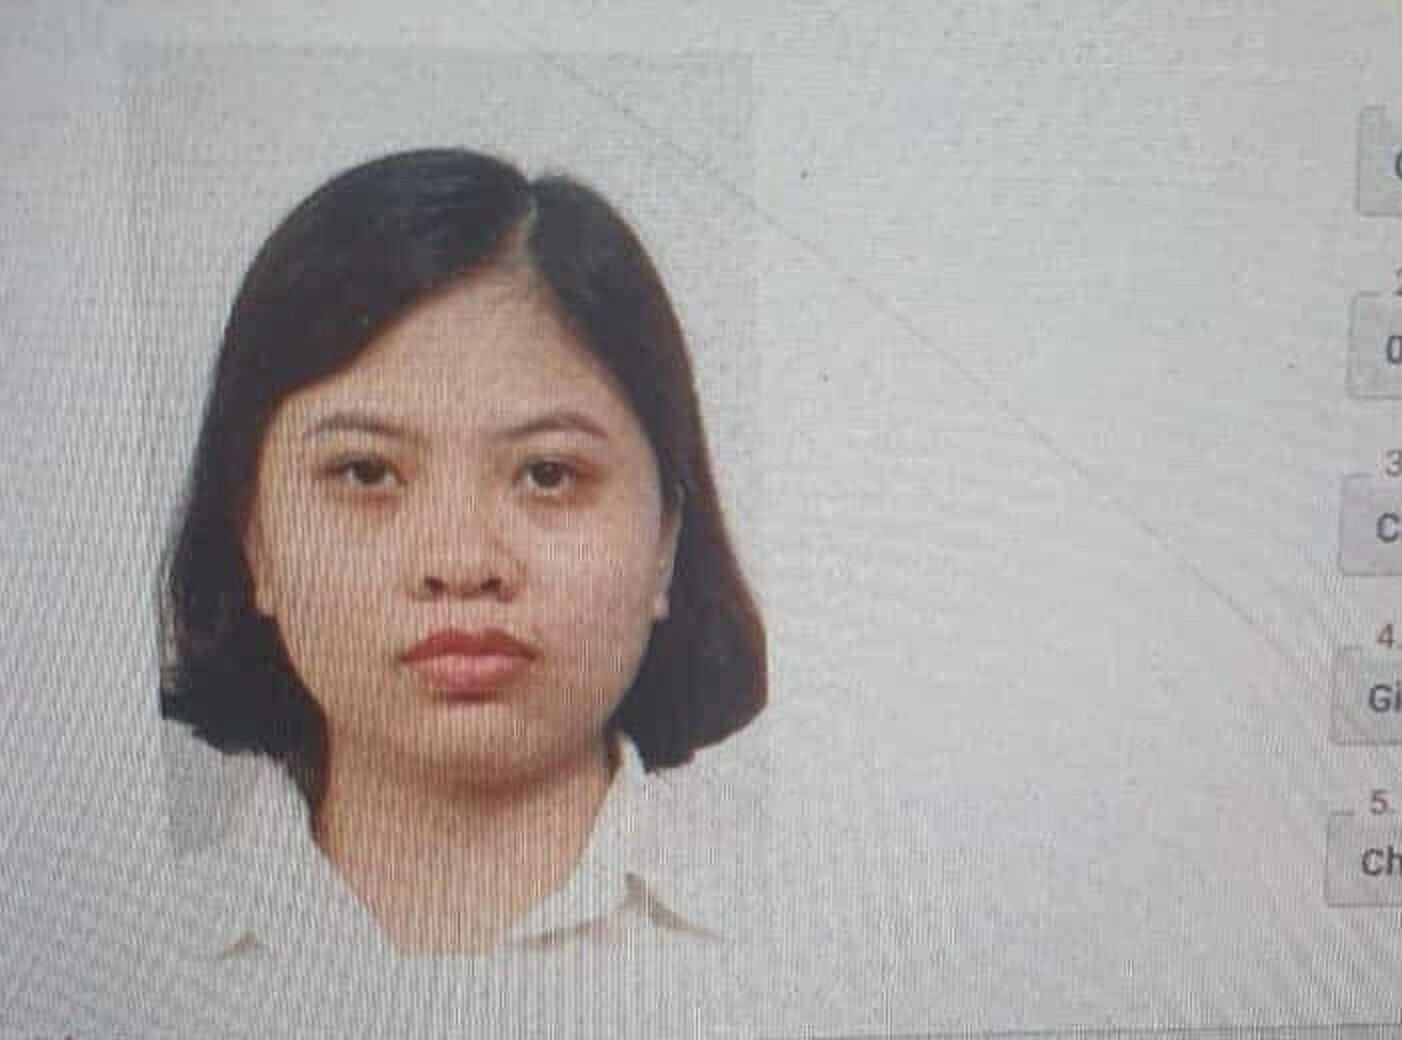 Lực lượng Công an phát đi thông báo truy tìm nghi can Giáp Thị Huyền Trang.